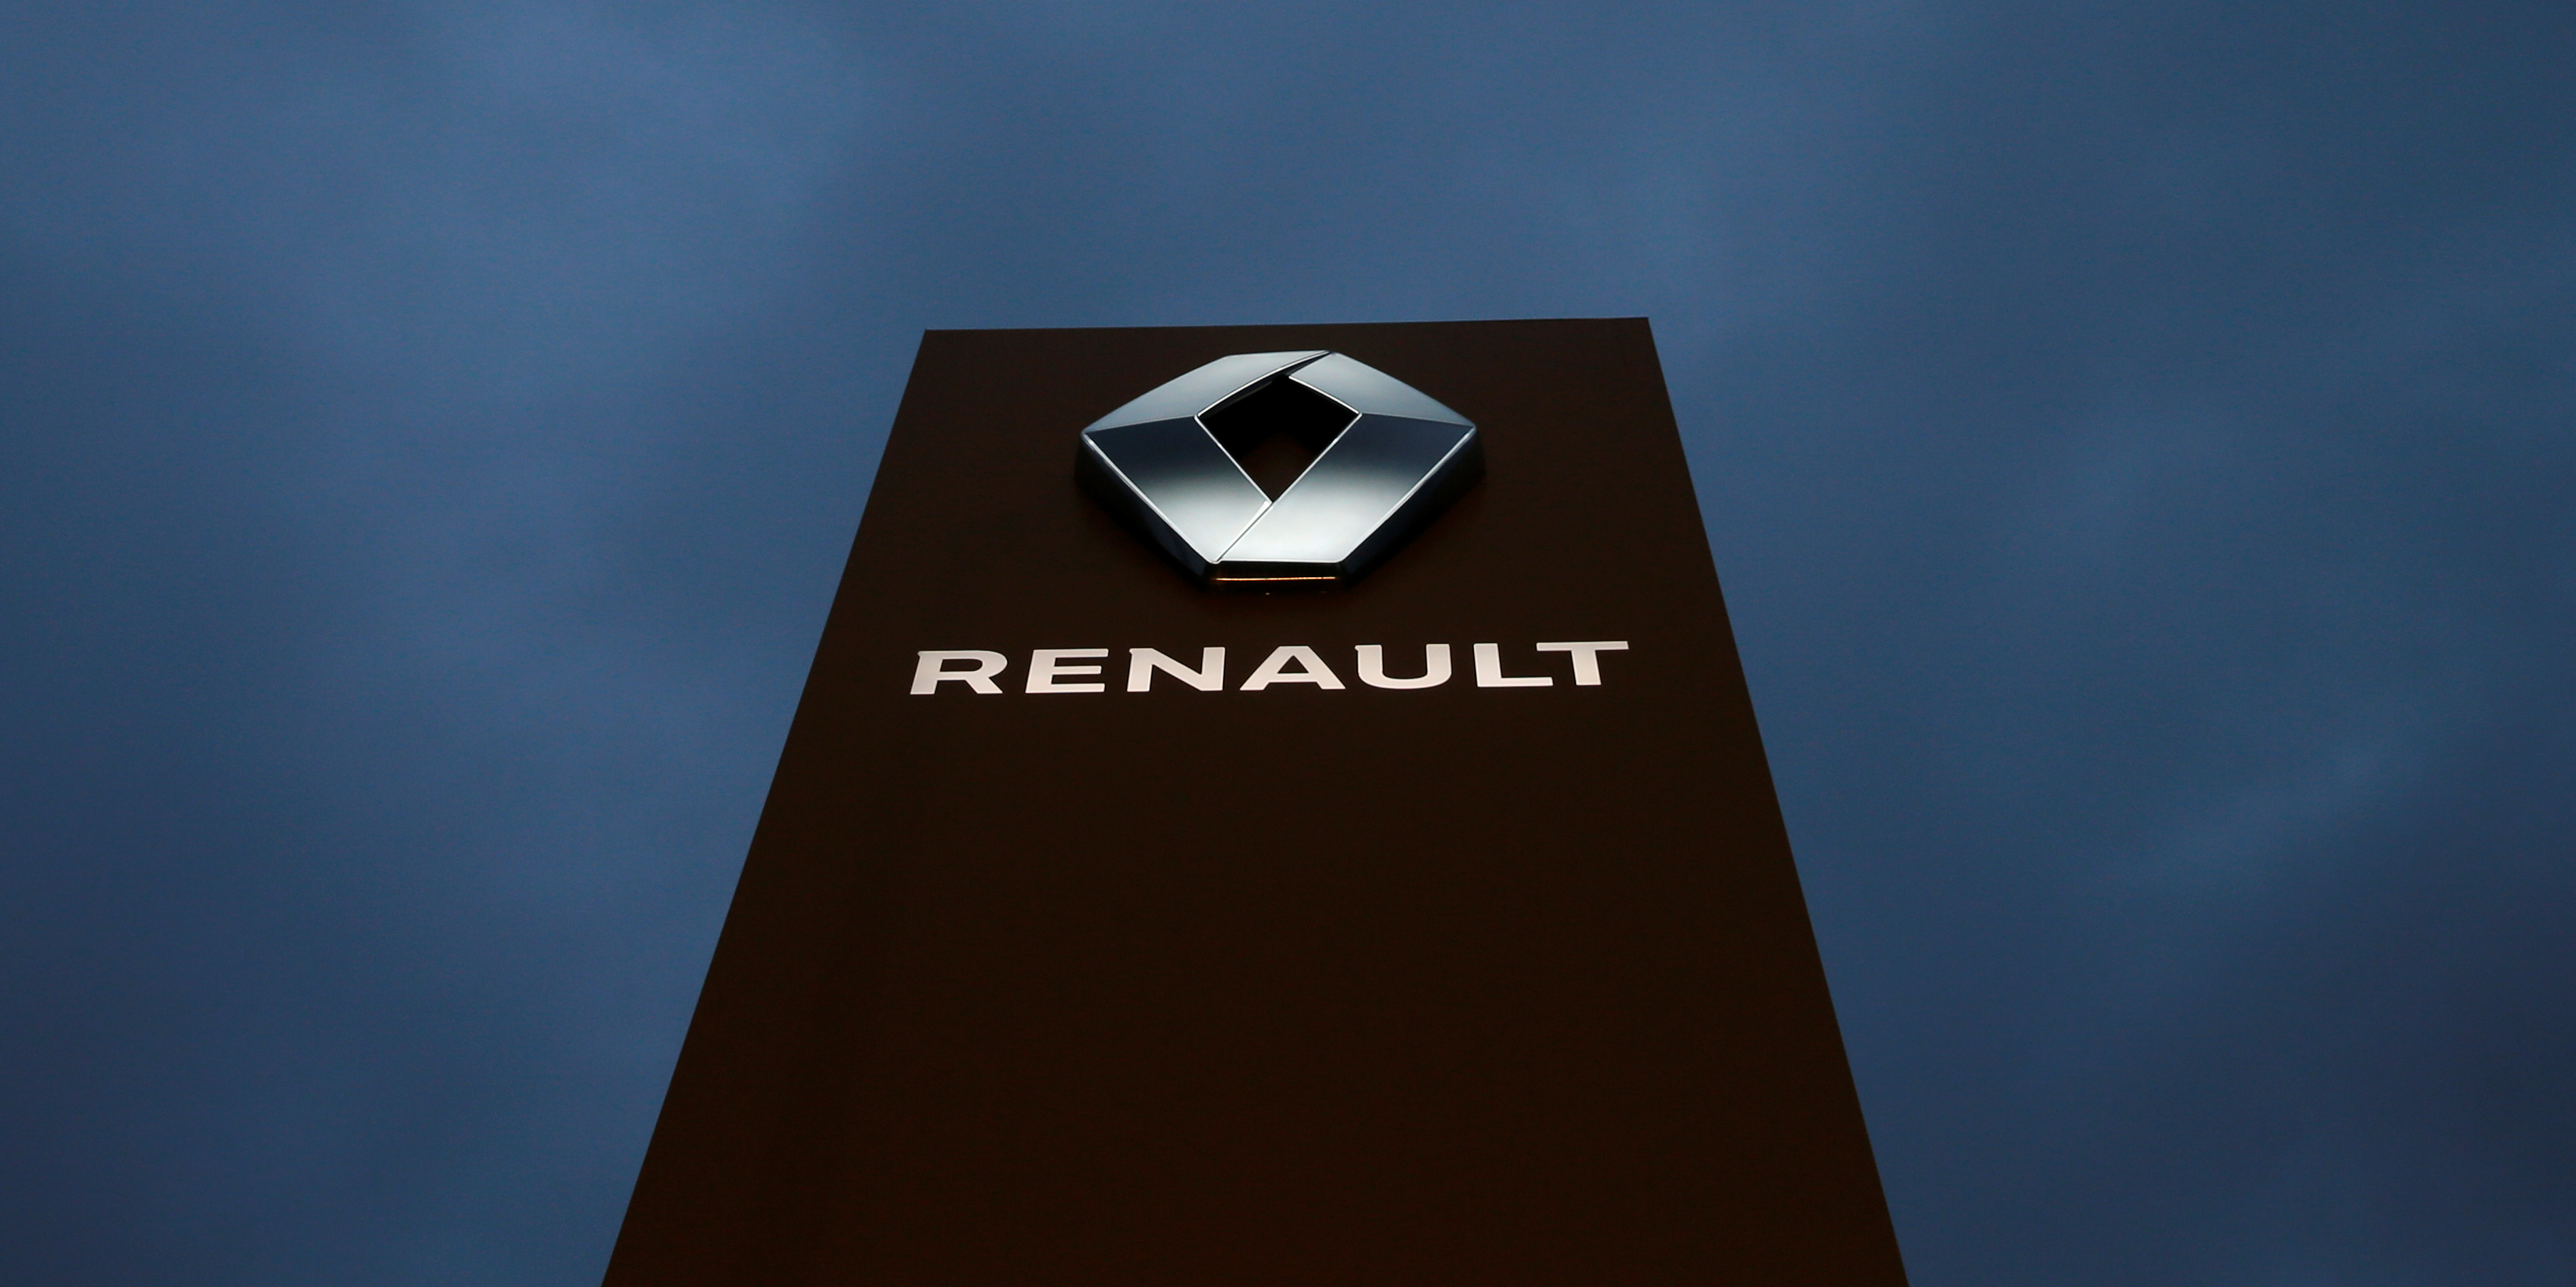 Incroyable histoire des marques. Le jour où le losange de Renault